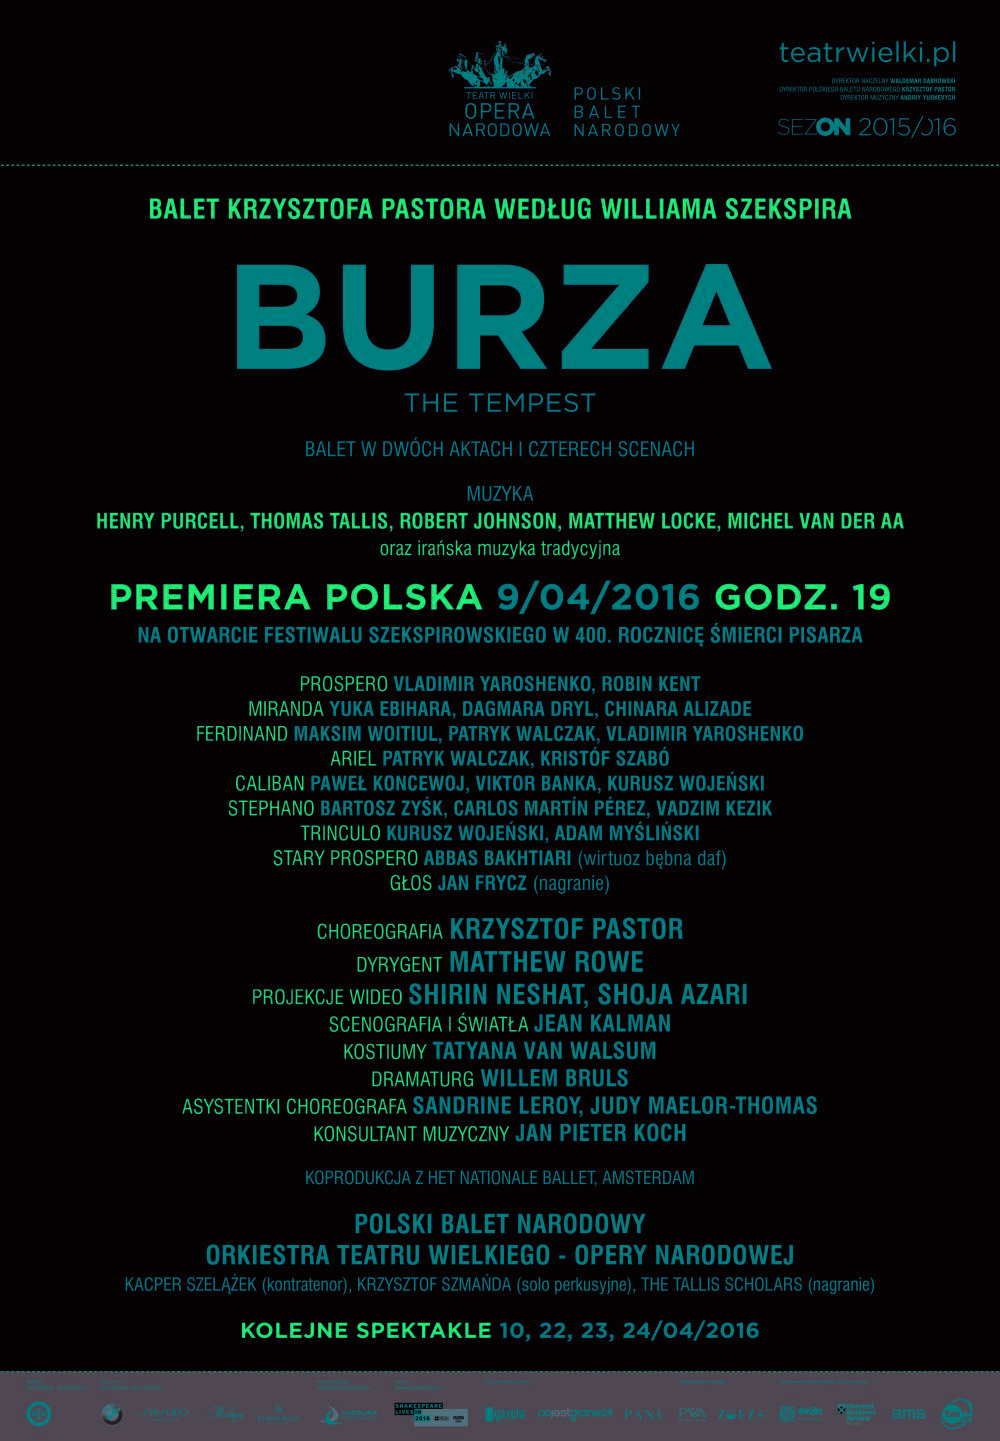 Afisz "Burza" Krzysztof Pastor według Williama Szekspira premiera polska 2016-04-09